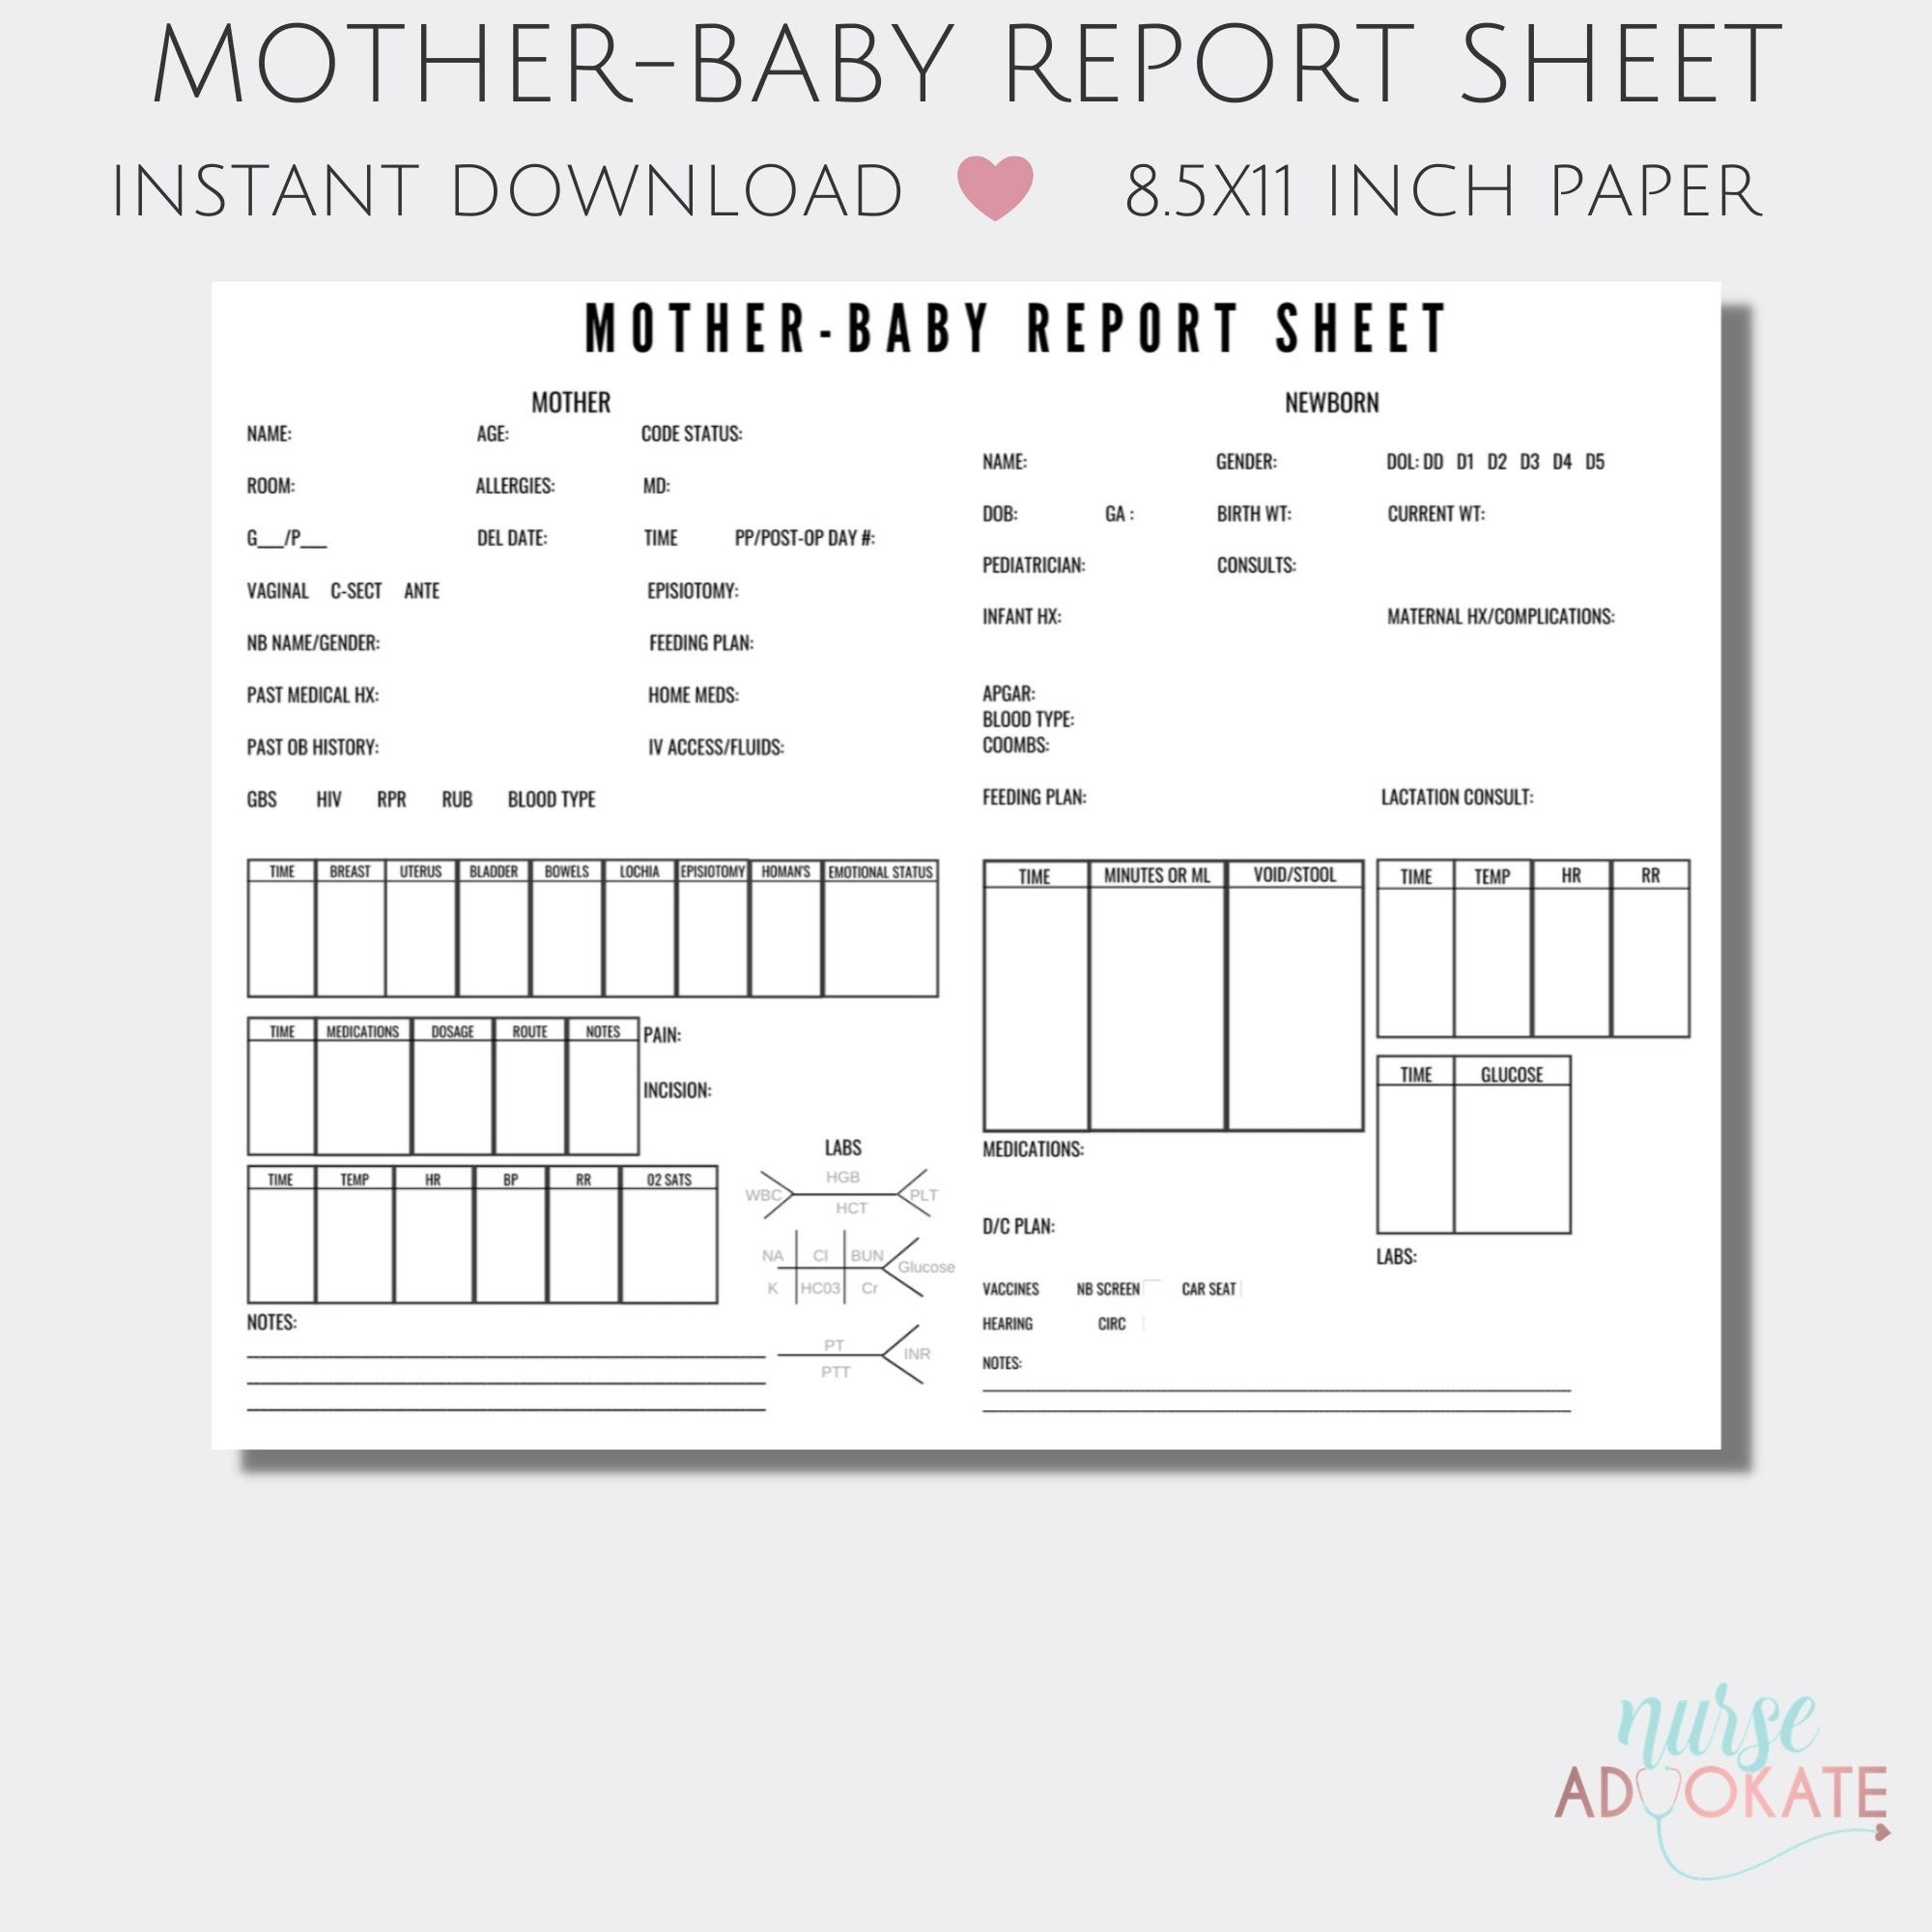 Mother-baby RN Report Sheet Template. SBAR Handoff